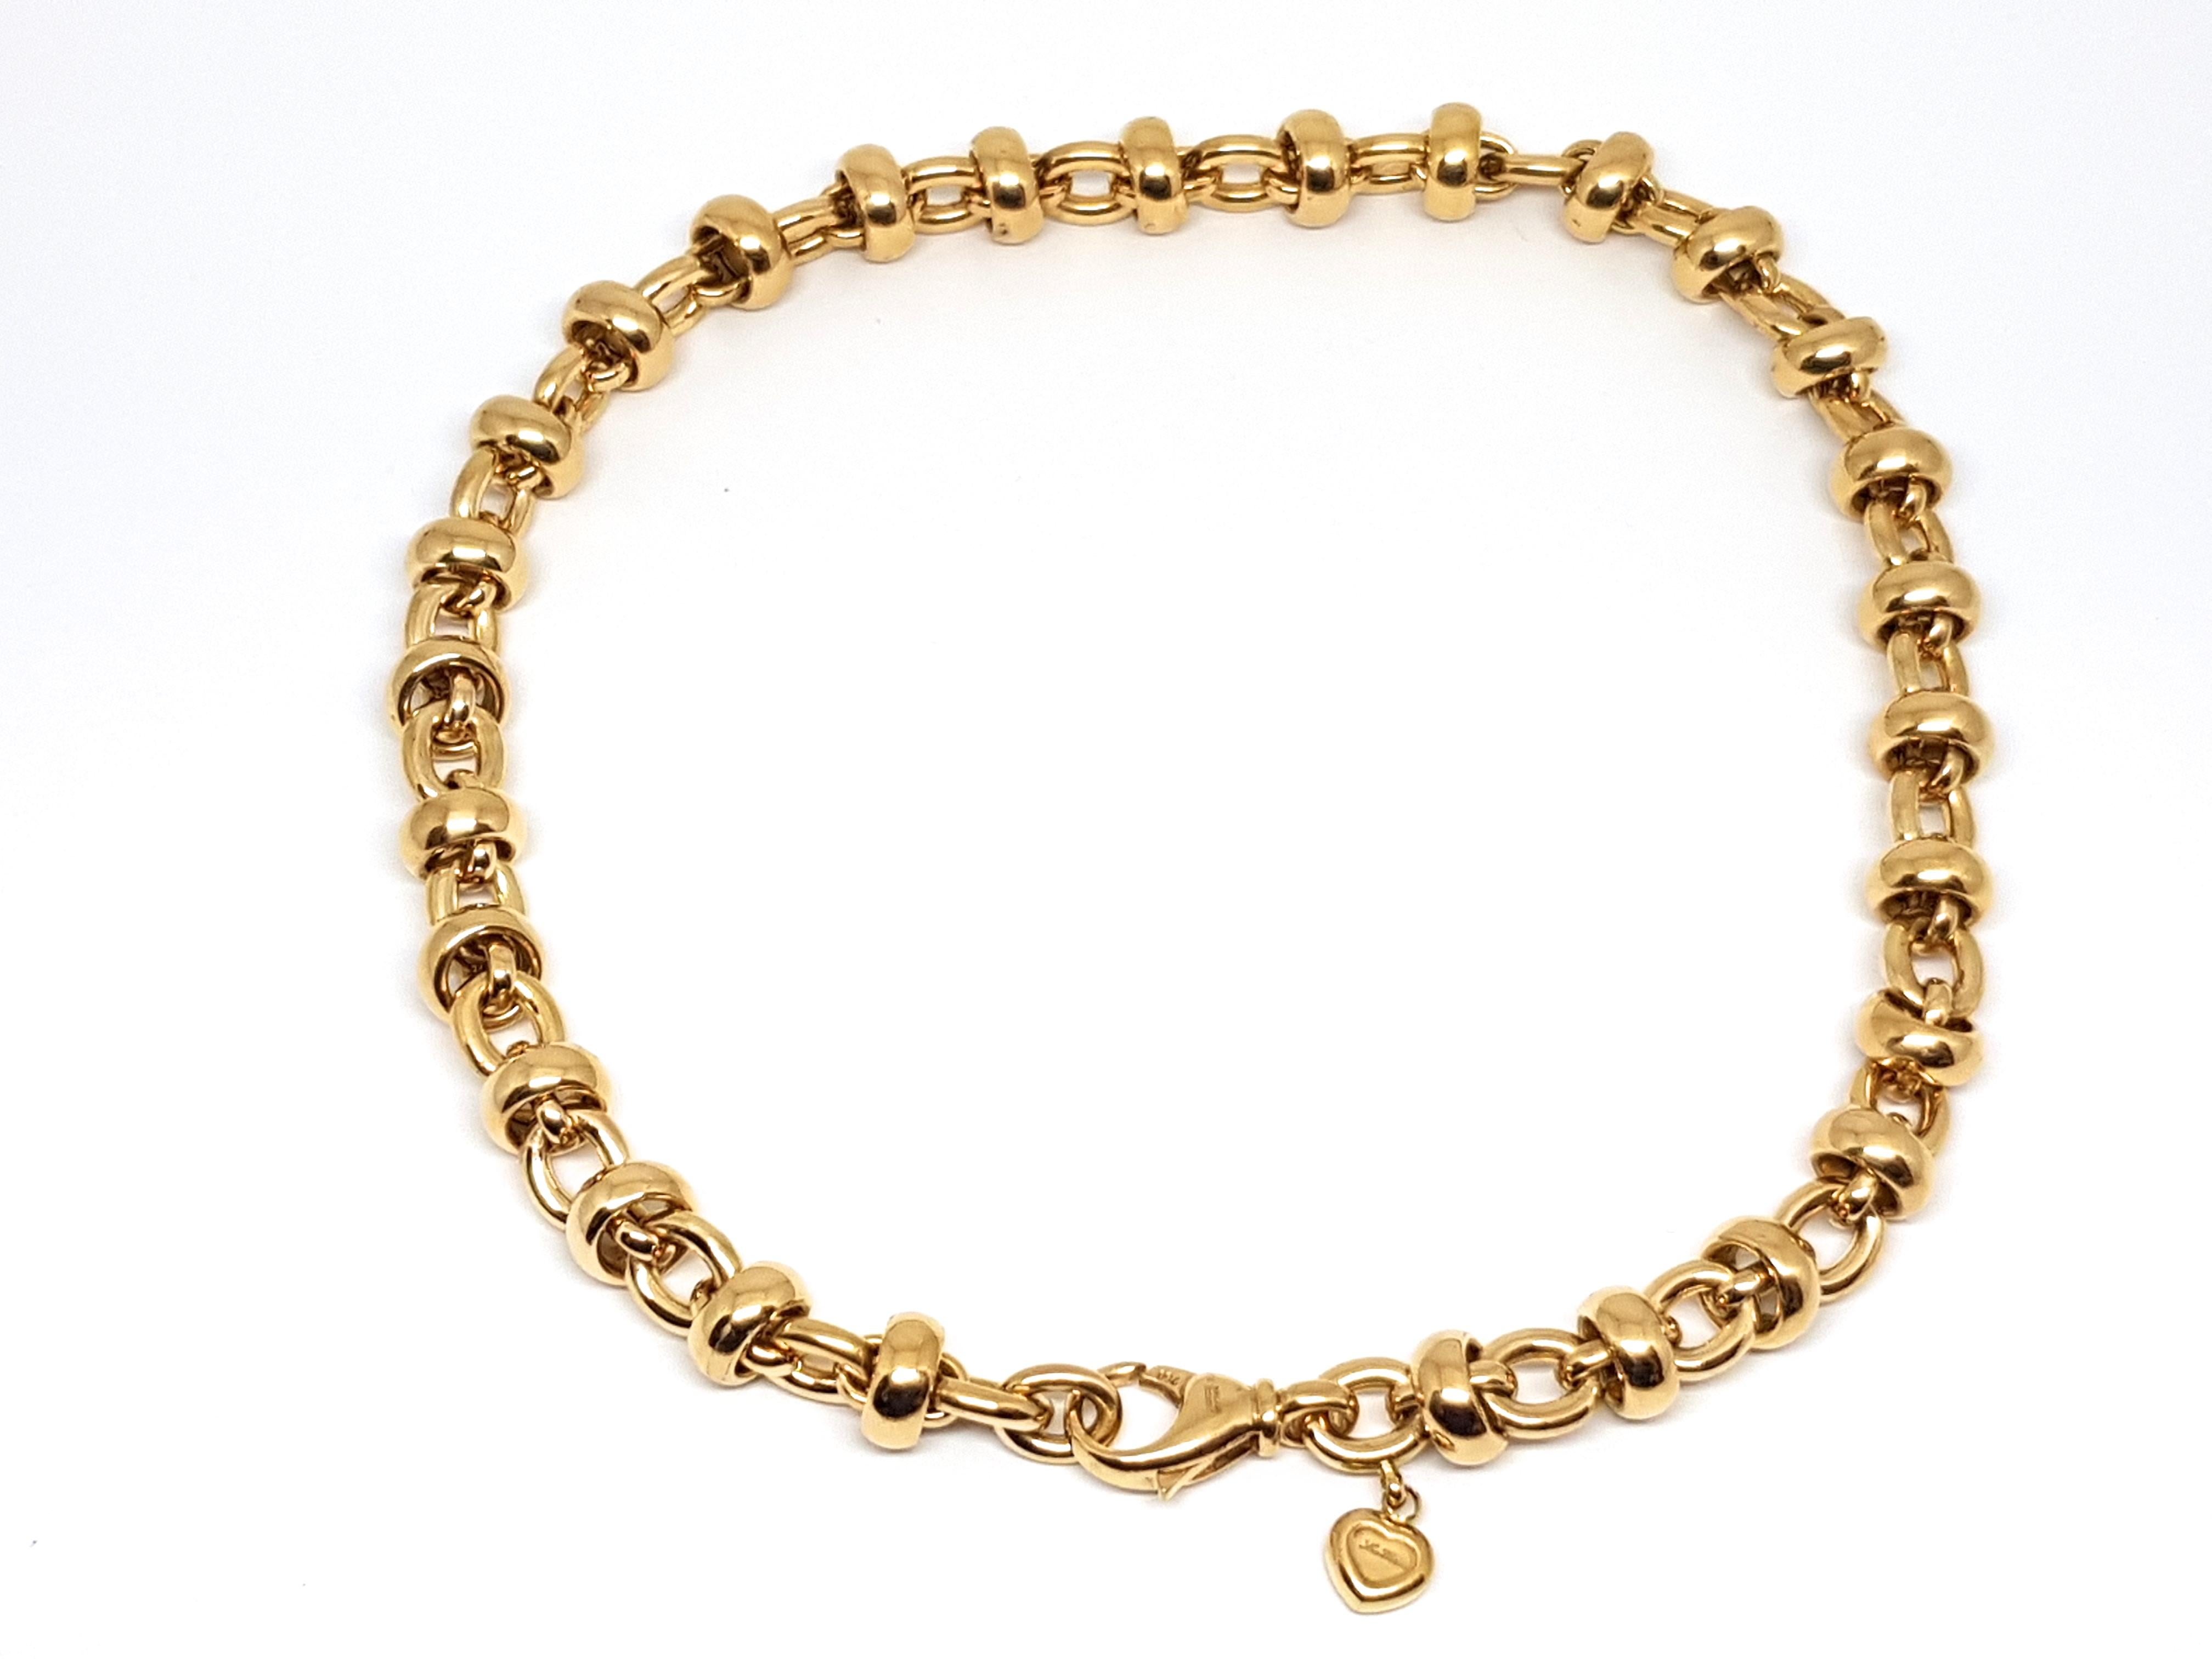 Contemporary Chopard Les Chaines 18 Karat Yellow Gold Link Necklace Bracelet Set Original Box